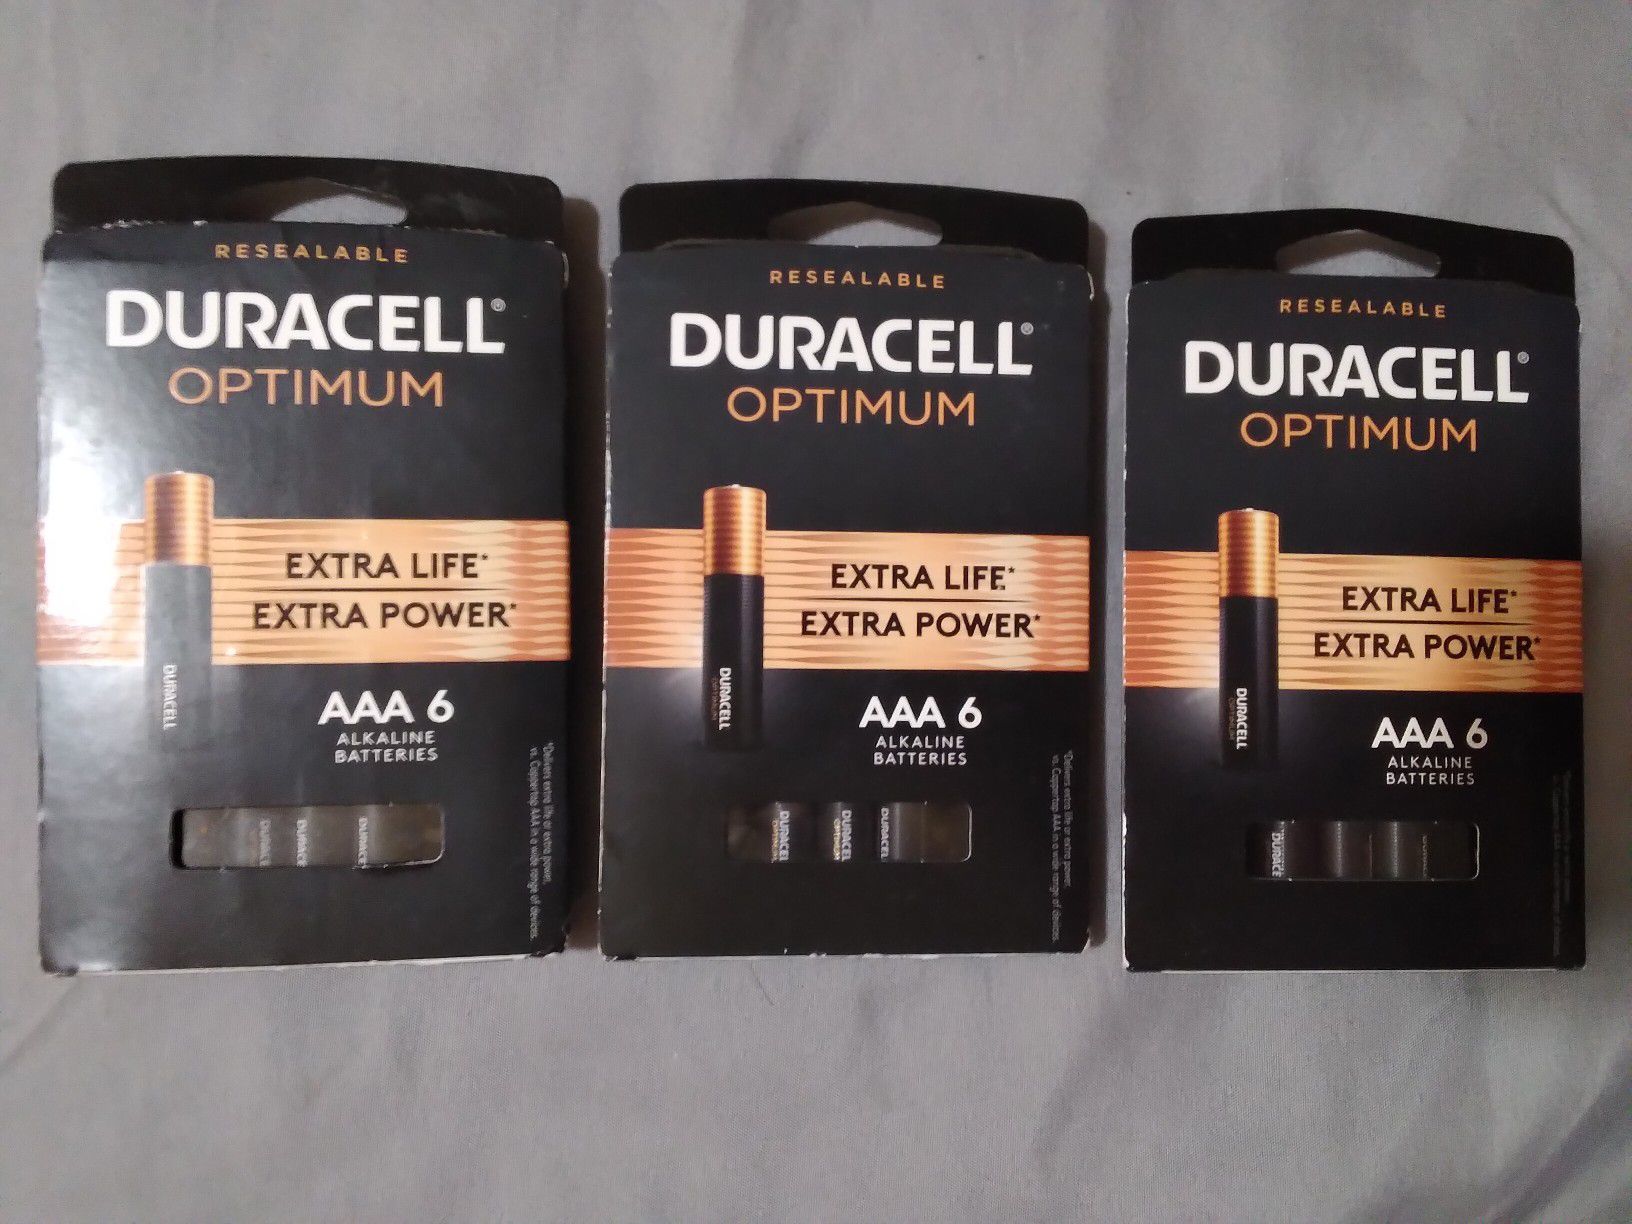 Duracell Optimum AAA batteries